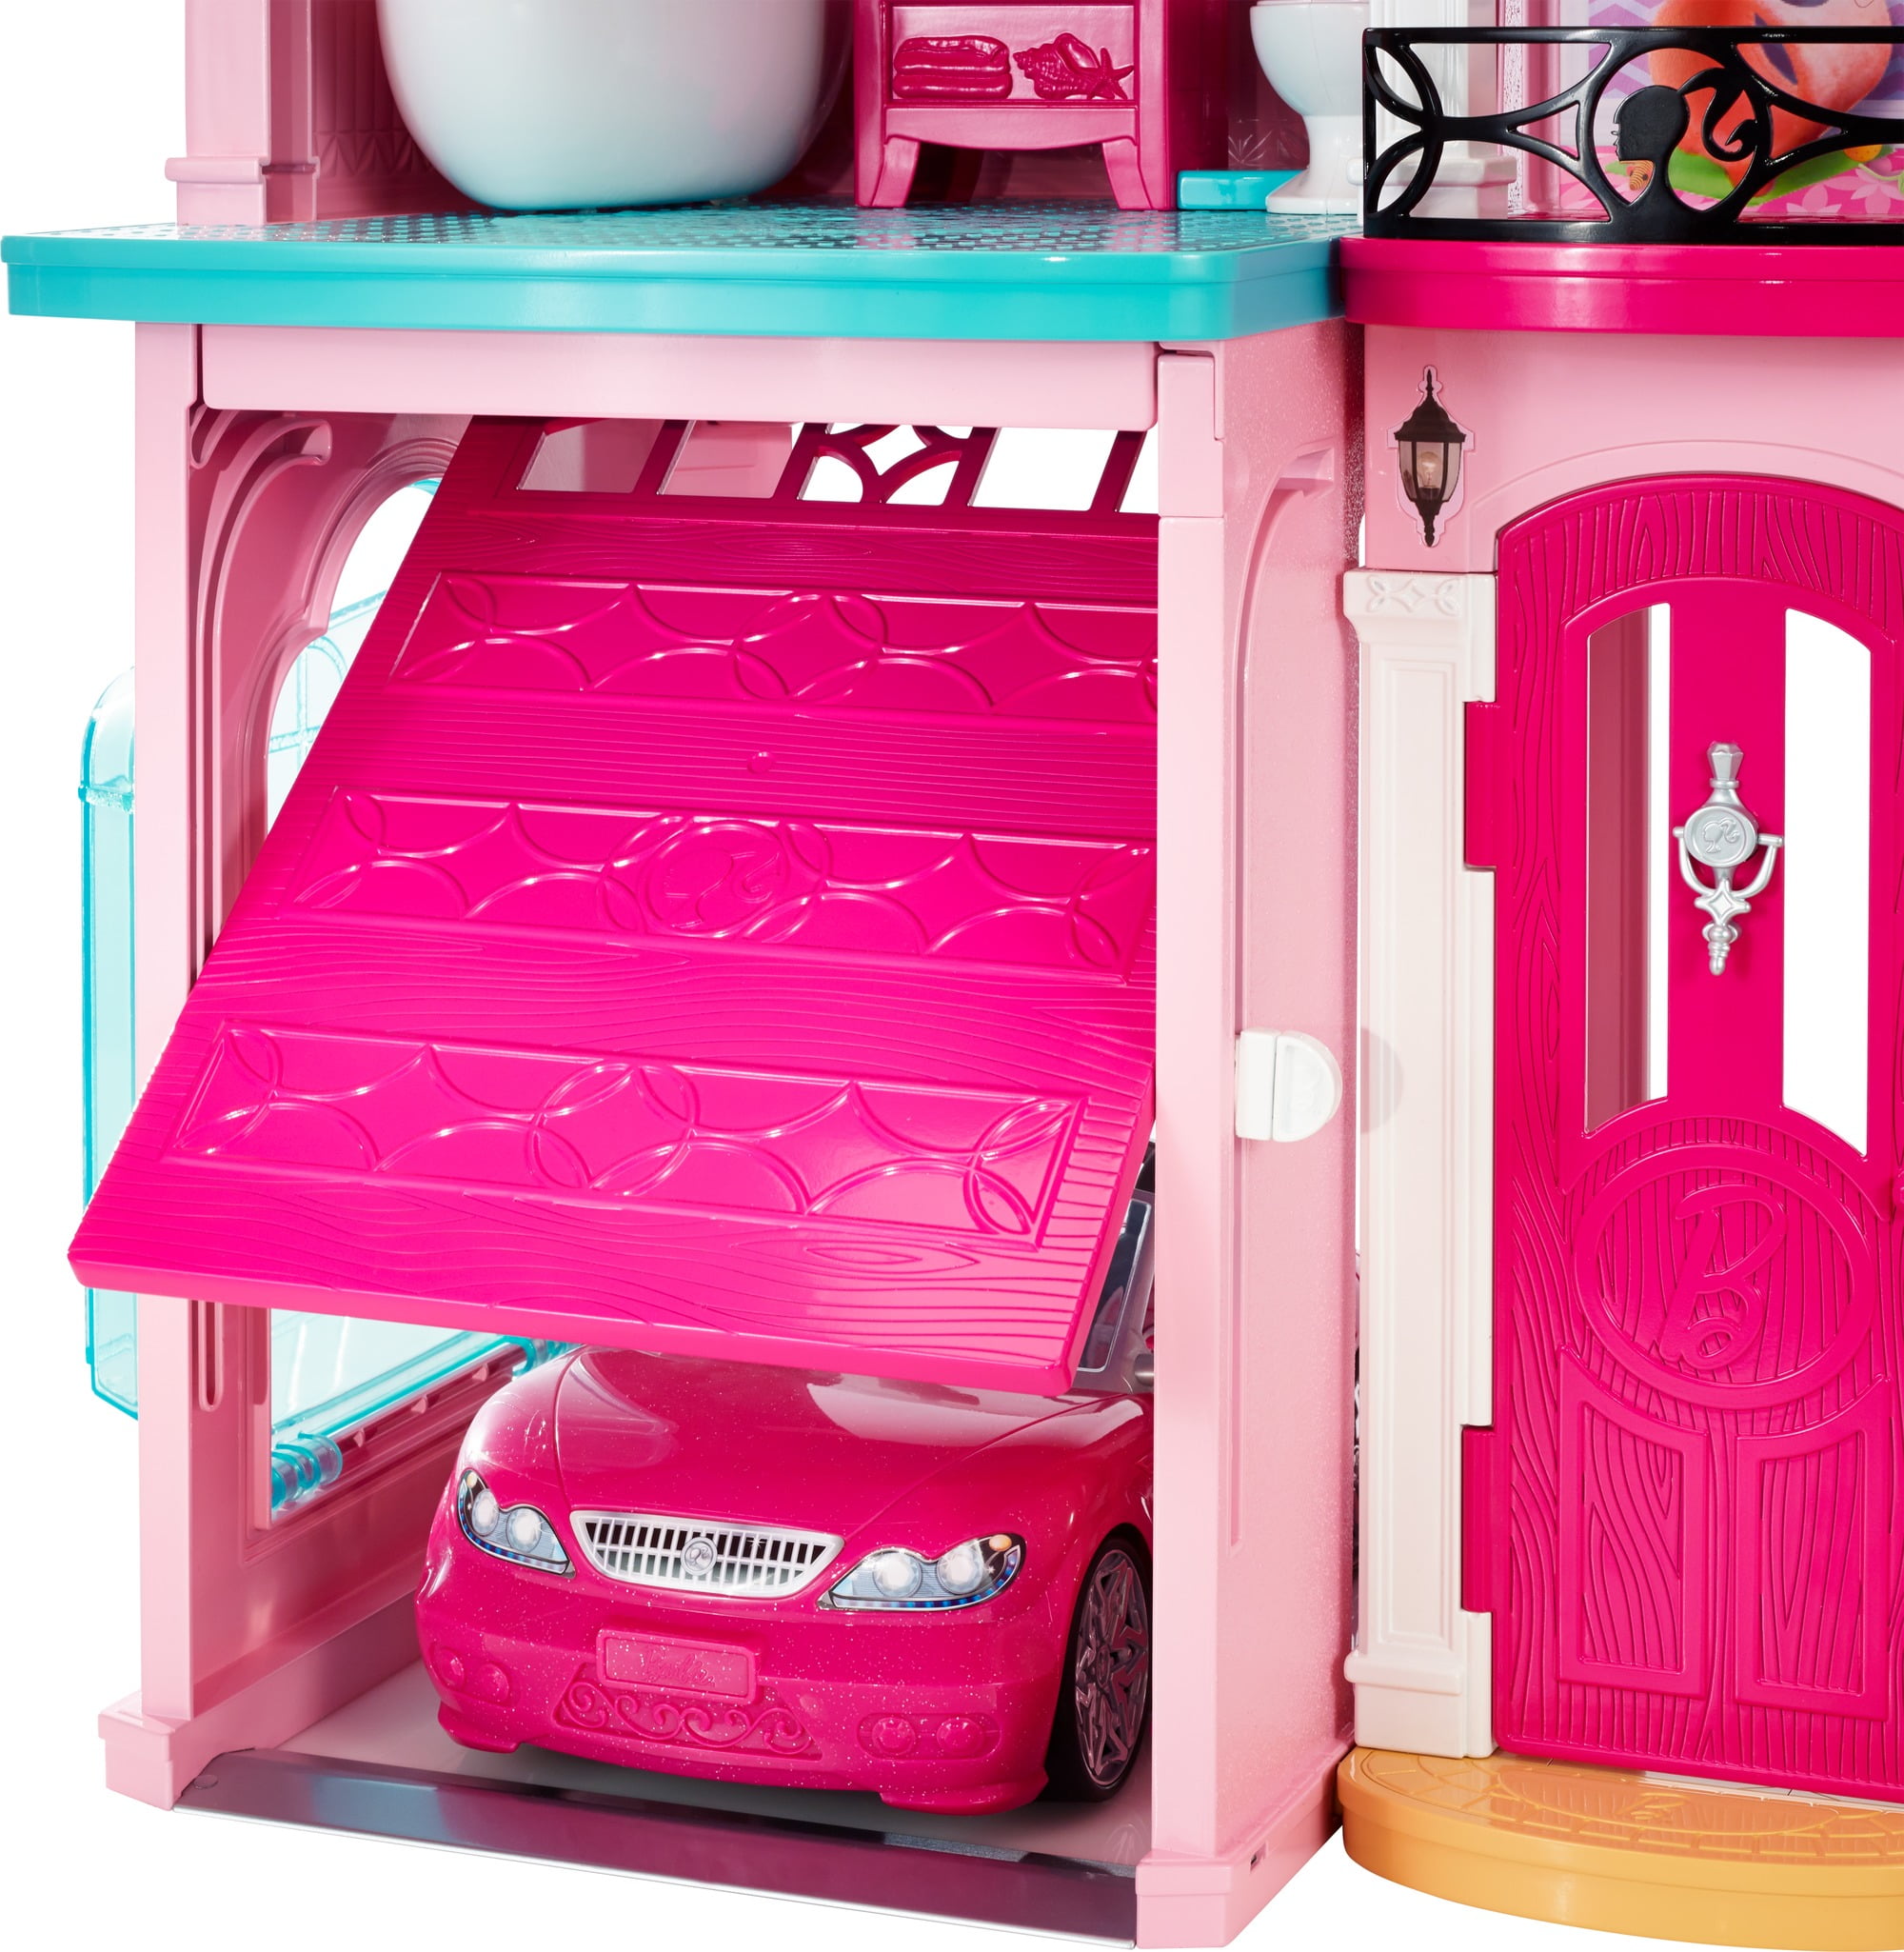 barbie doll house set